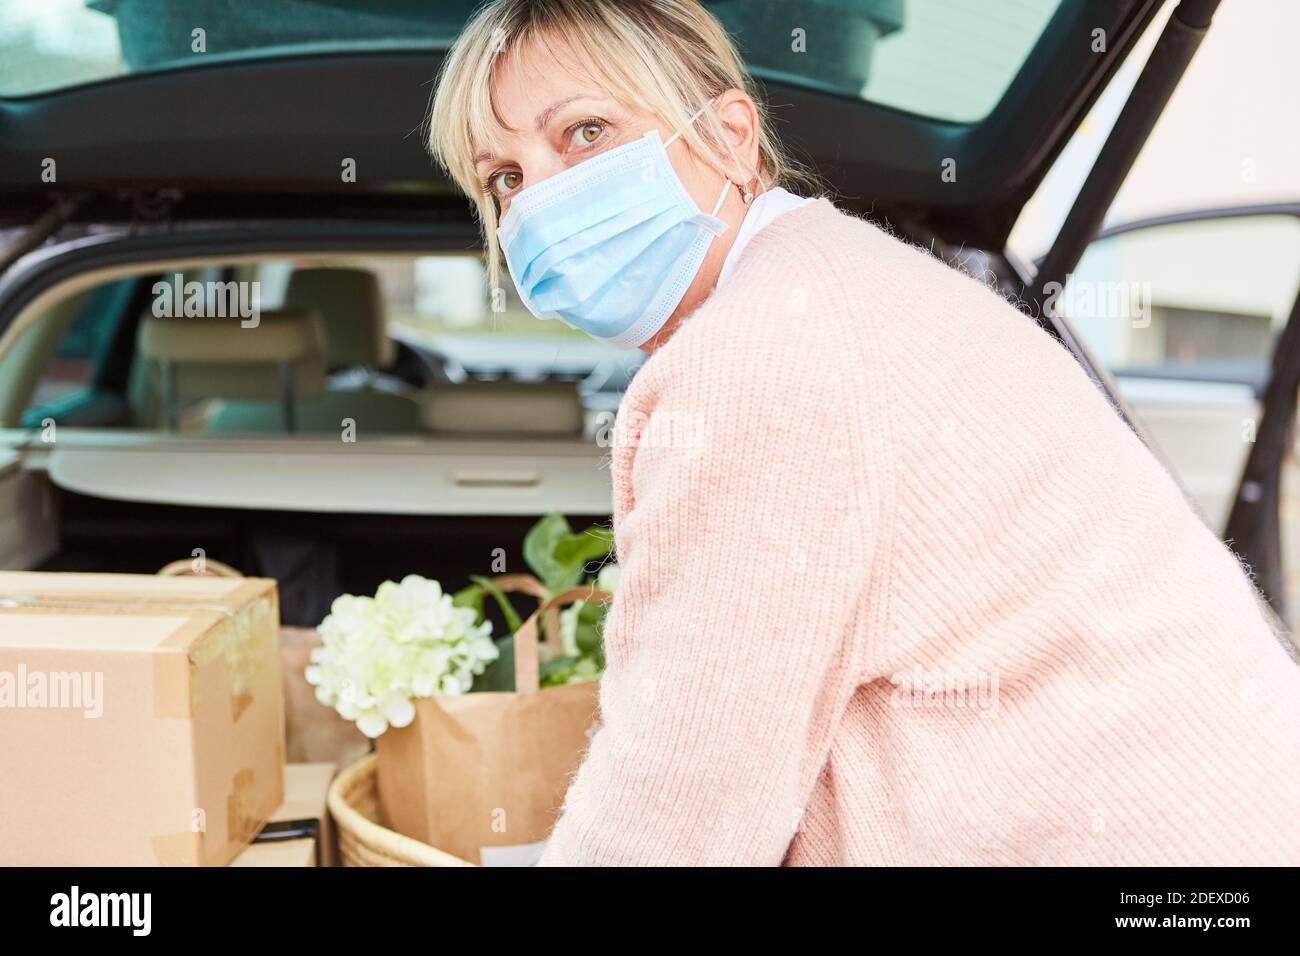 Frau mit Gesichtsmaske vor einem offenen Auto Trunk voller Pakete und Einkäufe Stockfoto